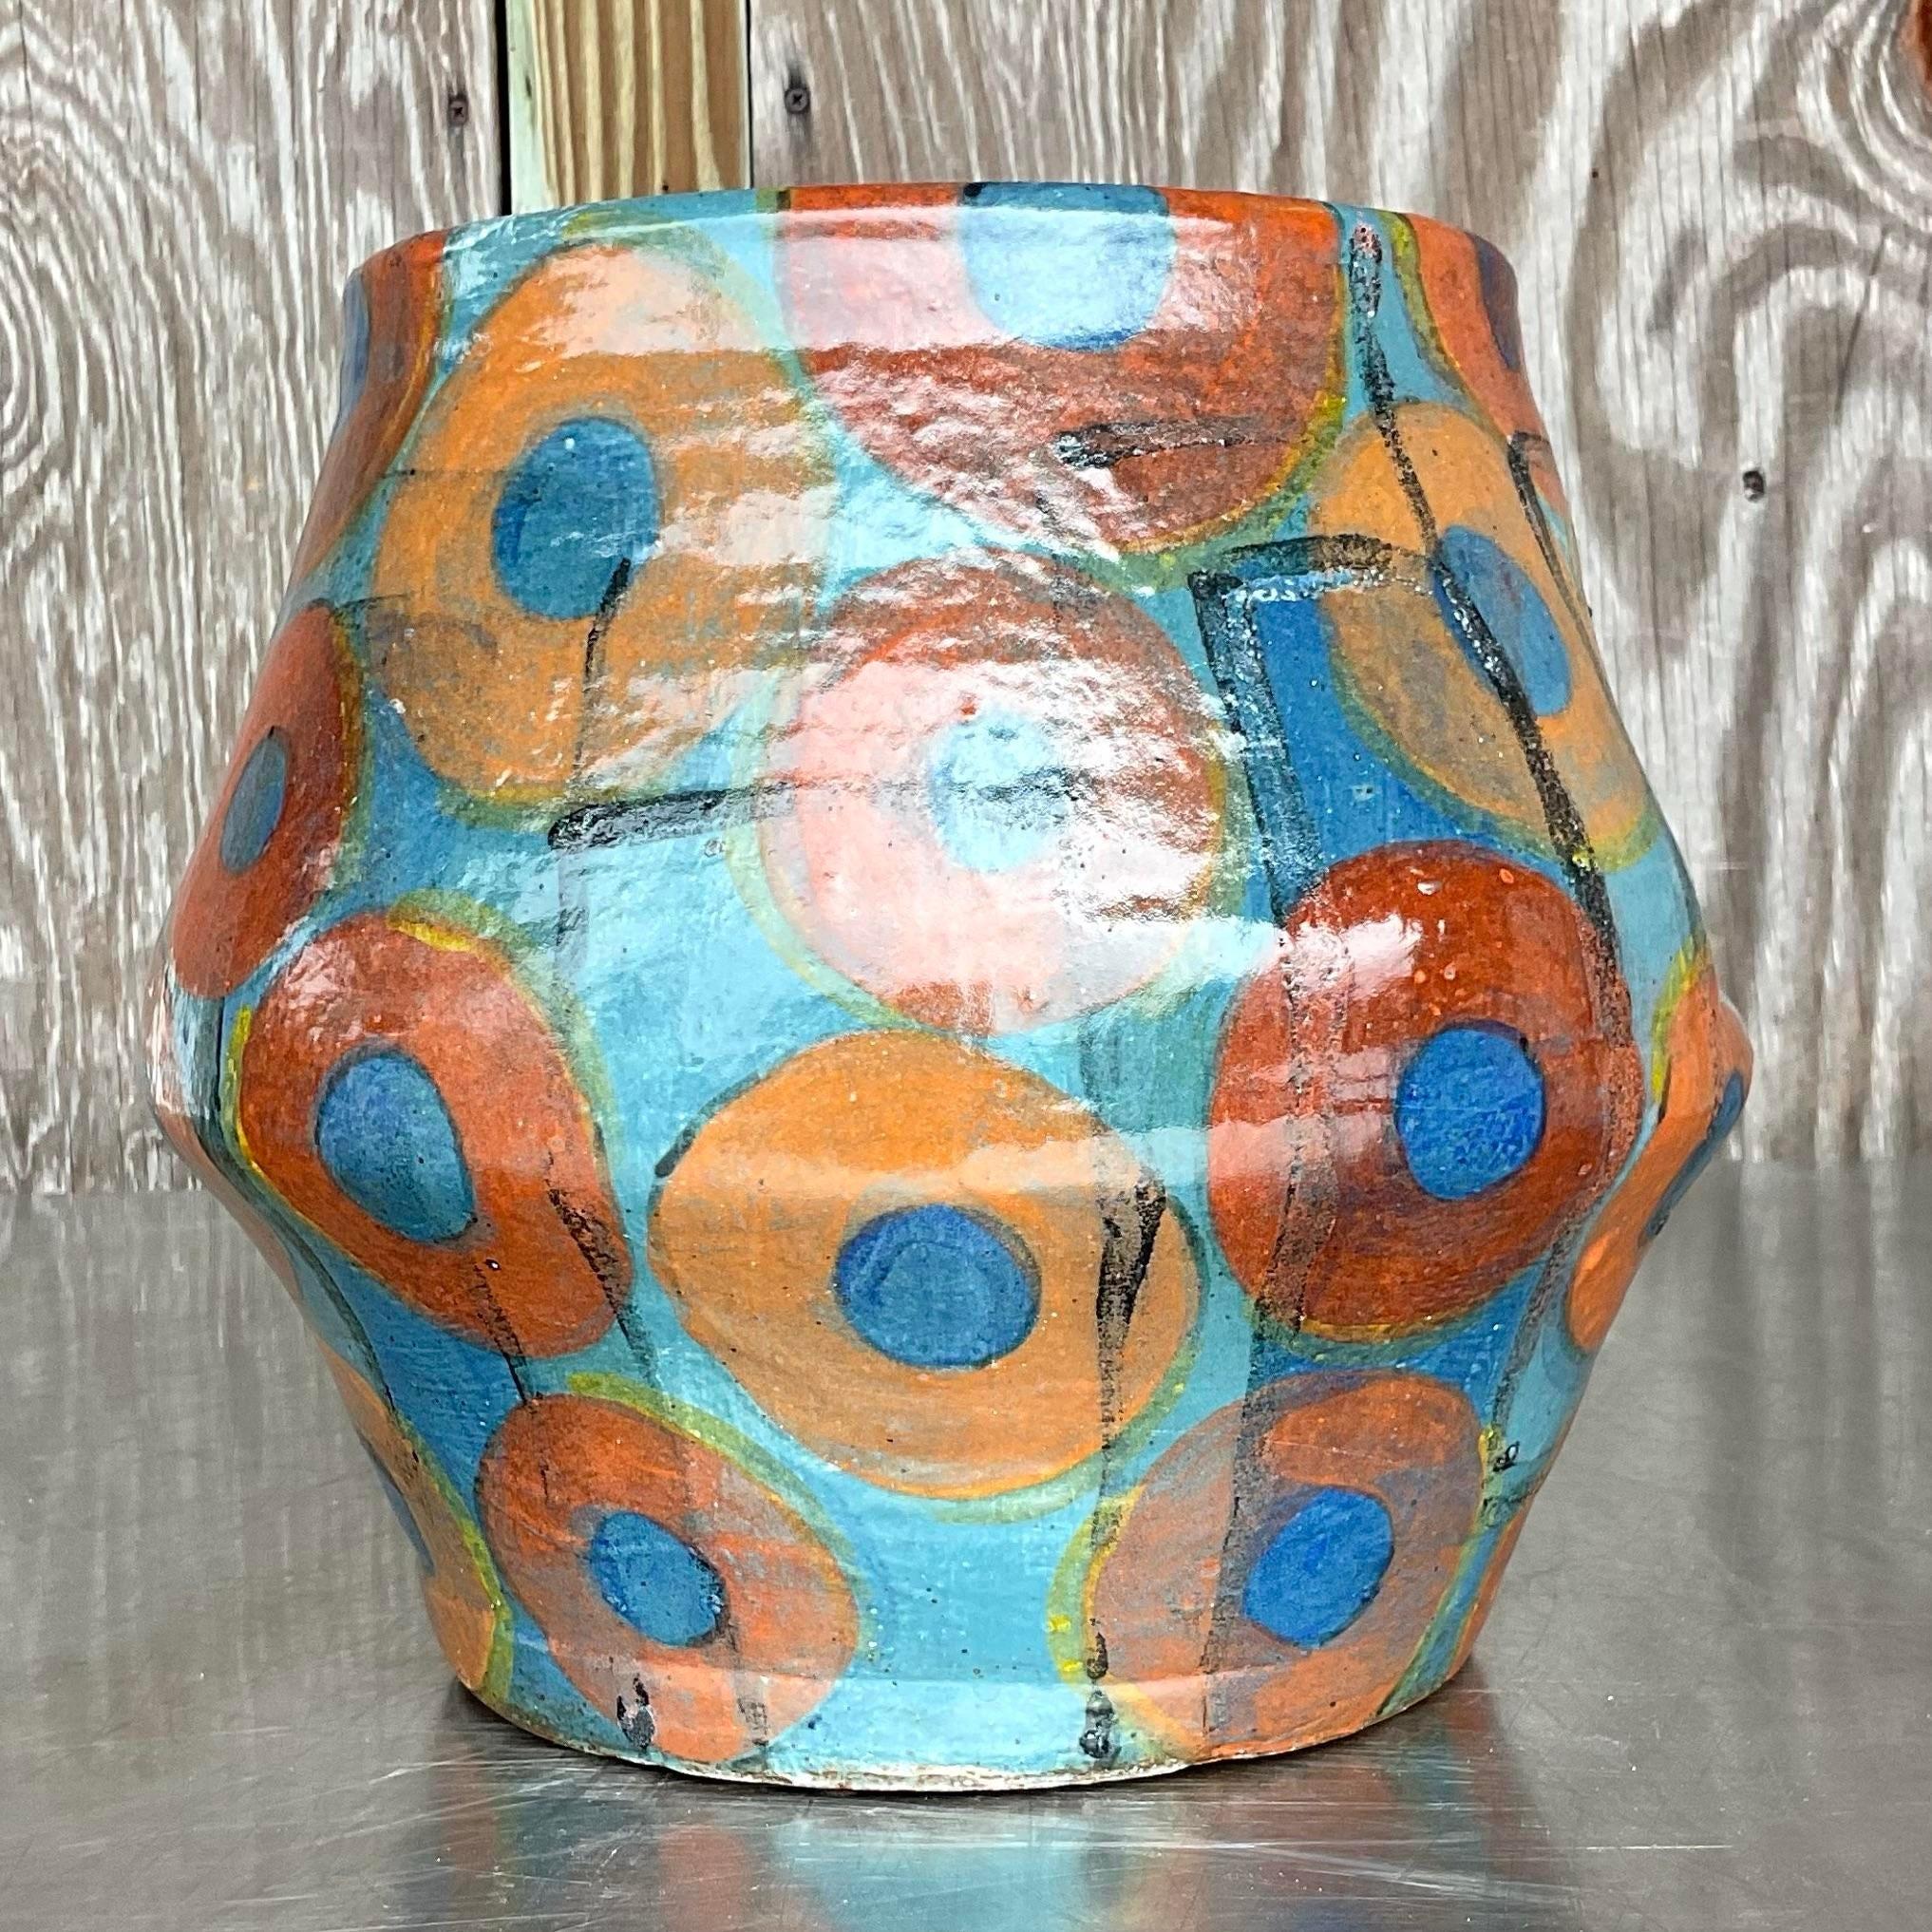 Lassen Sie sich von dem eklektischen Charme dieser Vintage-Vase mit Boho-Signatur von Studio Pottery verzaubern - ein wahres Zeugnis amerikanischer Handwerkskunst. Jede Kurve und jede Glasur erzählt eine Geschichte des künstlerischen Ausdrucks und